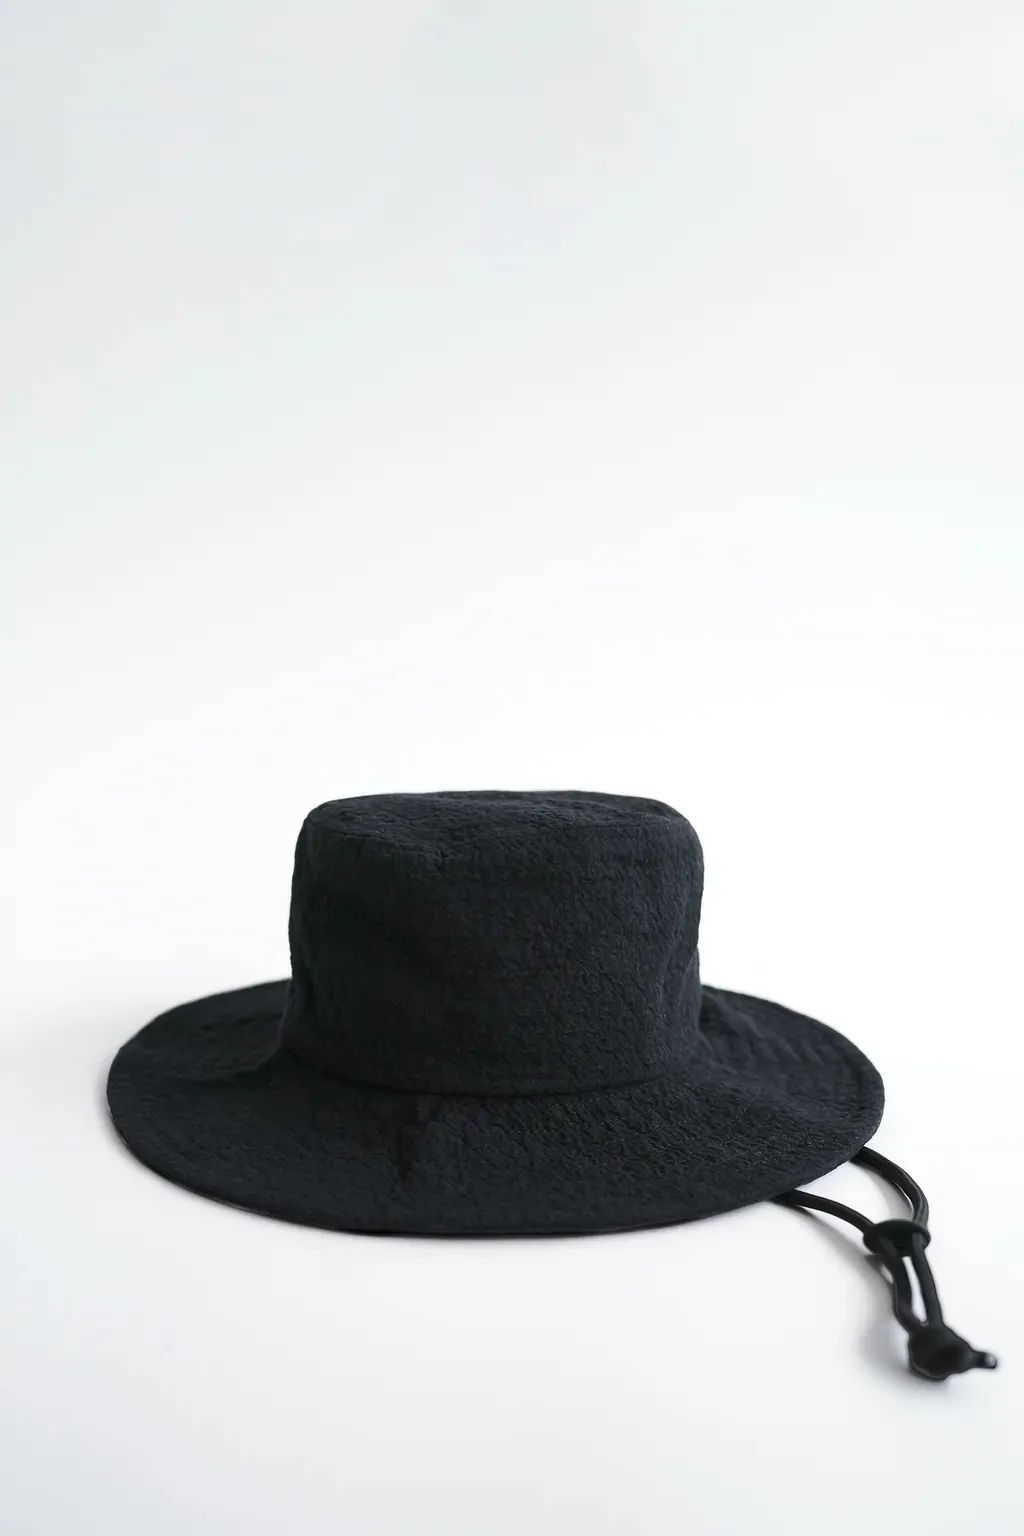 刘雯迪丽热巴都是渔夫帽的重度爱好者 遮阳又时髦